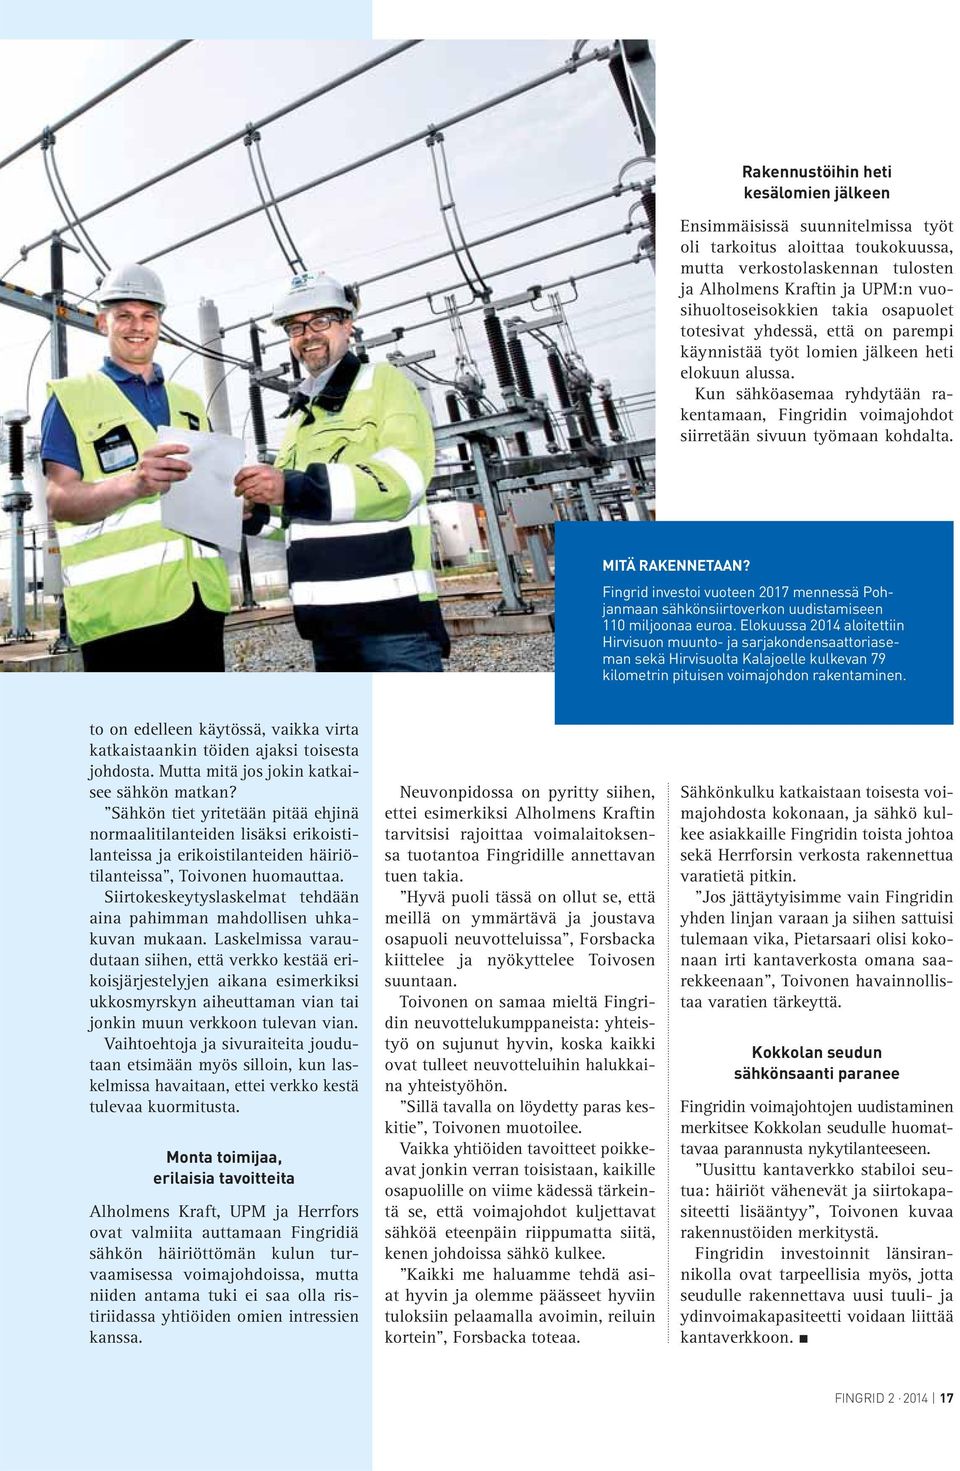 MITÄ RAKENNETAAN? Fingrid investoi vuoteen 2017 mennessä Pohjanmaan sähkönsiirtoverkon uudistamiseen 110 miljoonaa euroa.